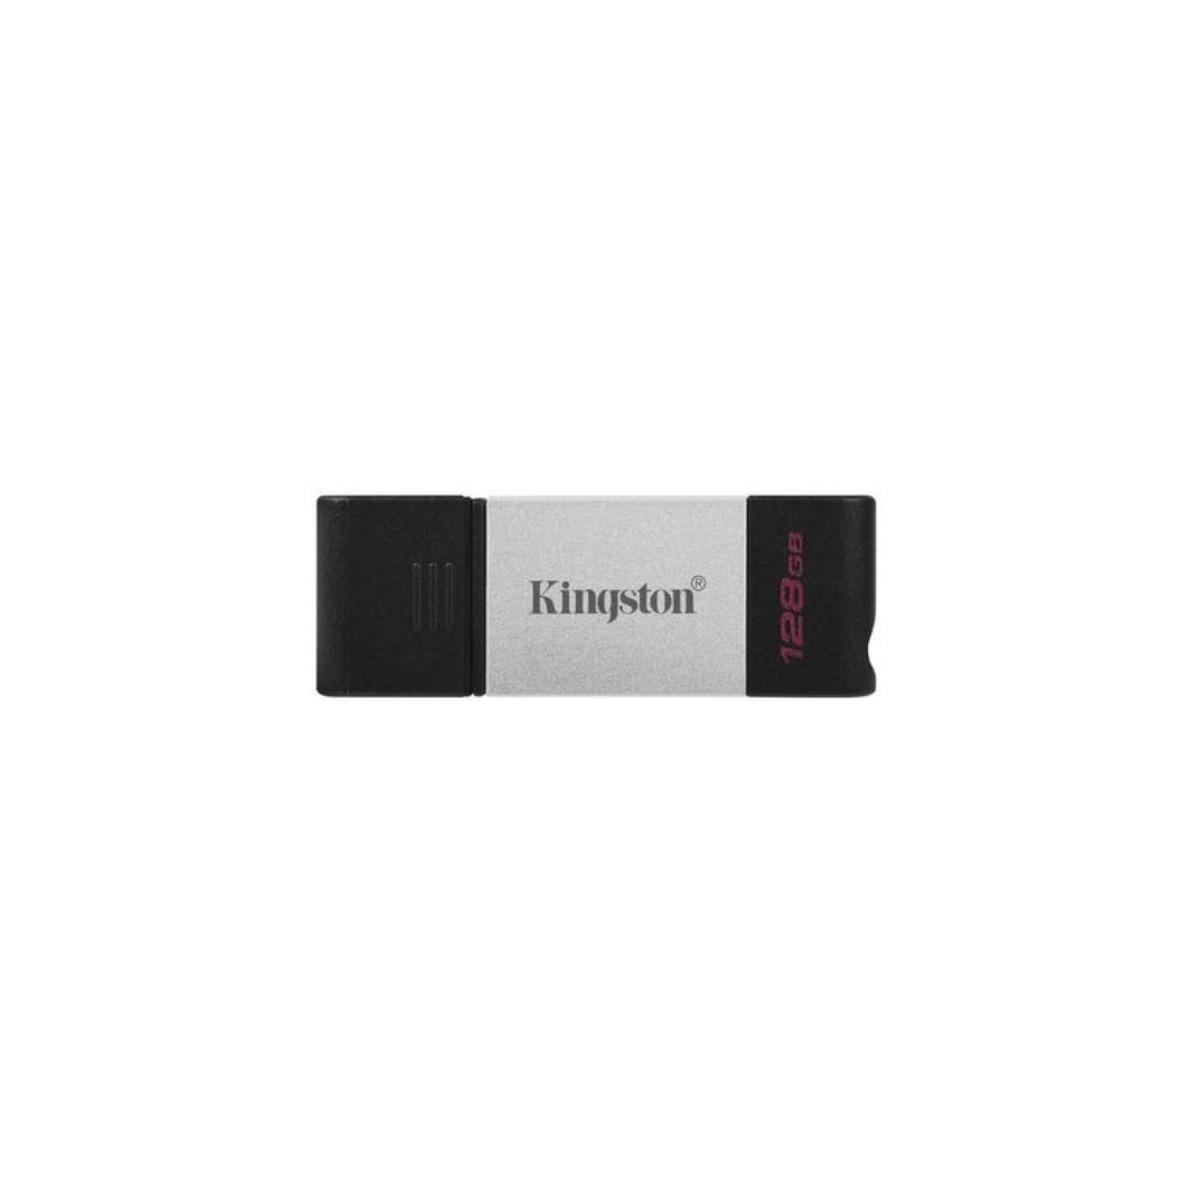 (Schwarz, USB KINGSTON GB) 128 Stick DT80/128GB